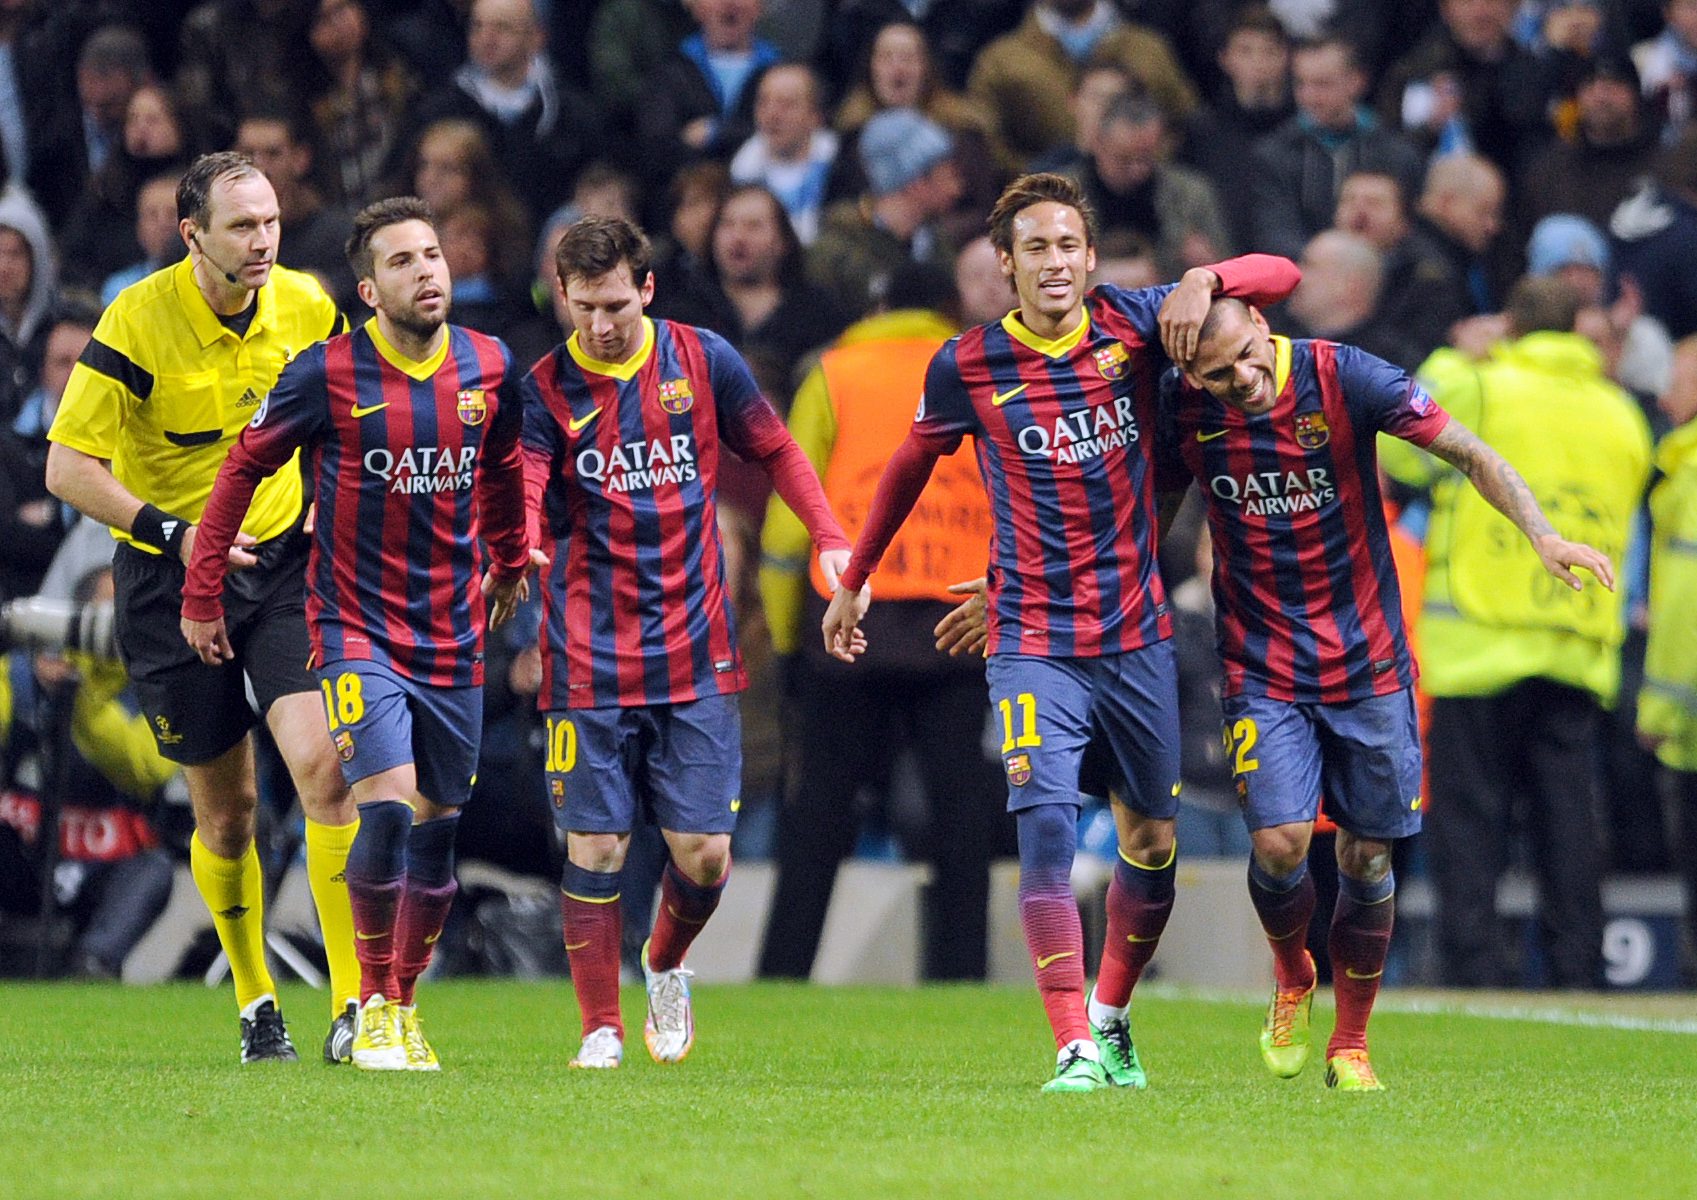 Vainqueurs 2-0, les Blaugranas (ici Jordi Alba, Neymar et Daniel Alves, de gauche à droite) peuvent envisager sereinement le match retour au Camp Nou.